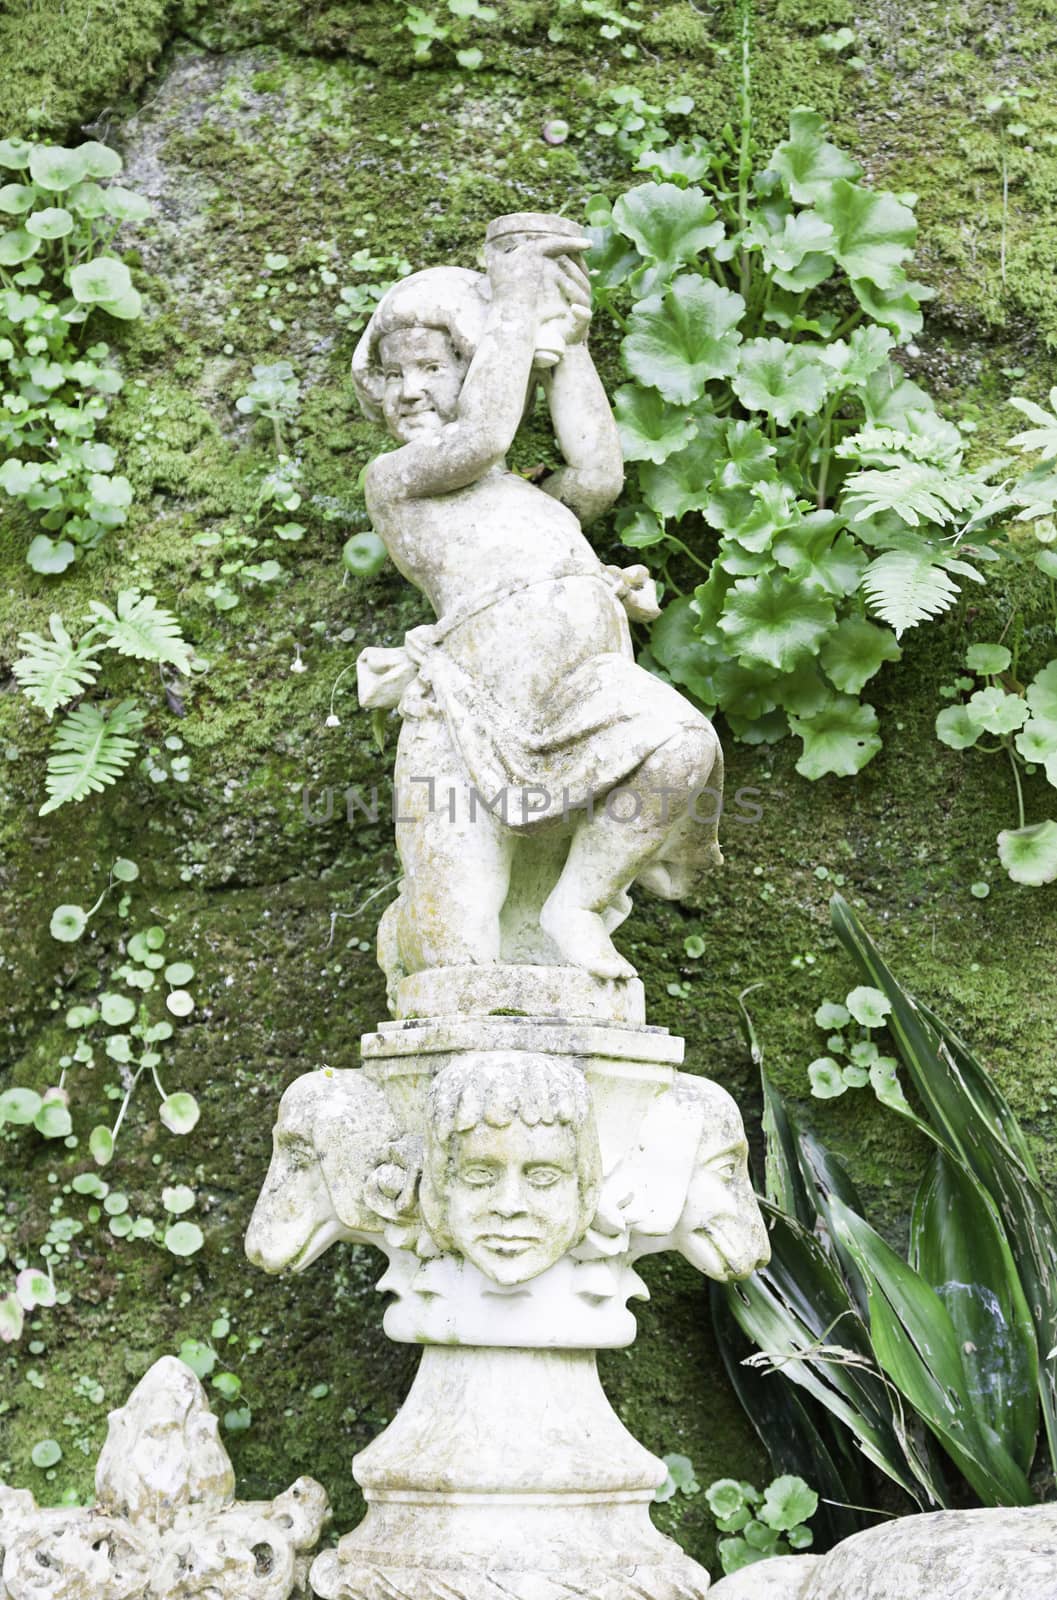 Stone statues in a garden in Sintra by esebene